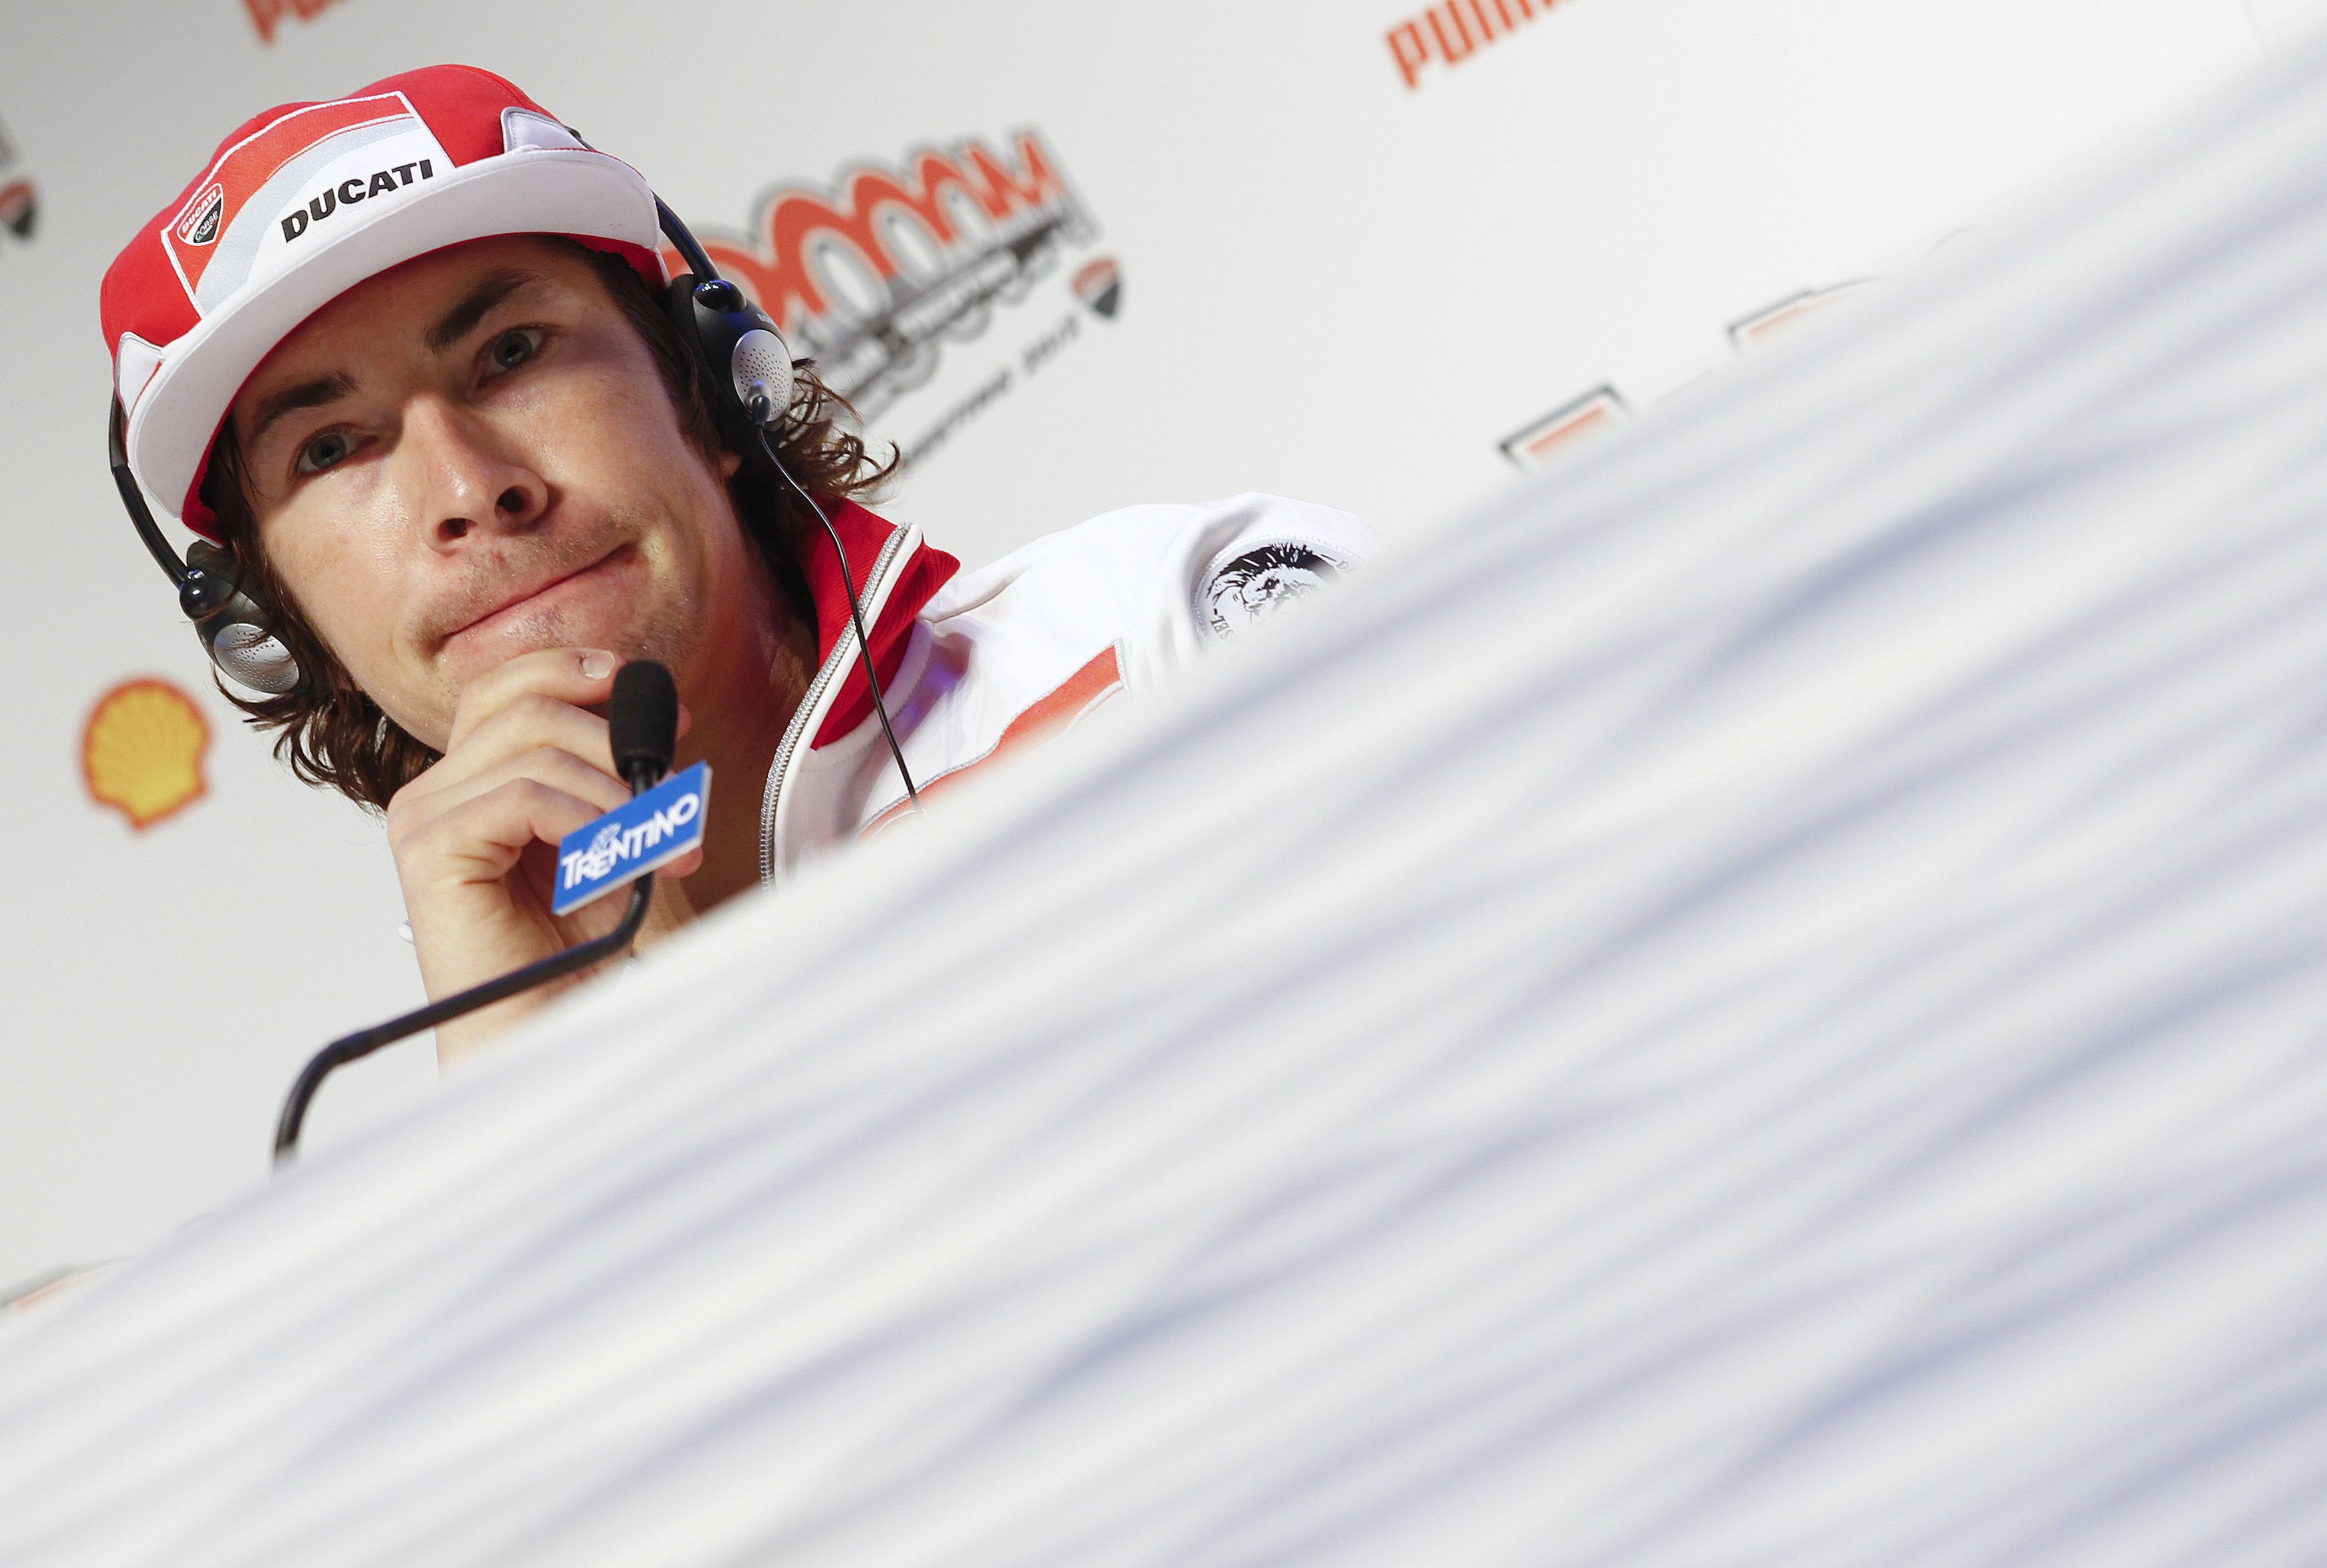 Πέθανε ο παγκόσμιος πρωταθλητής ΜotoGP Nicky Hayden